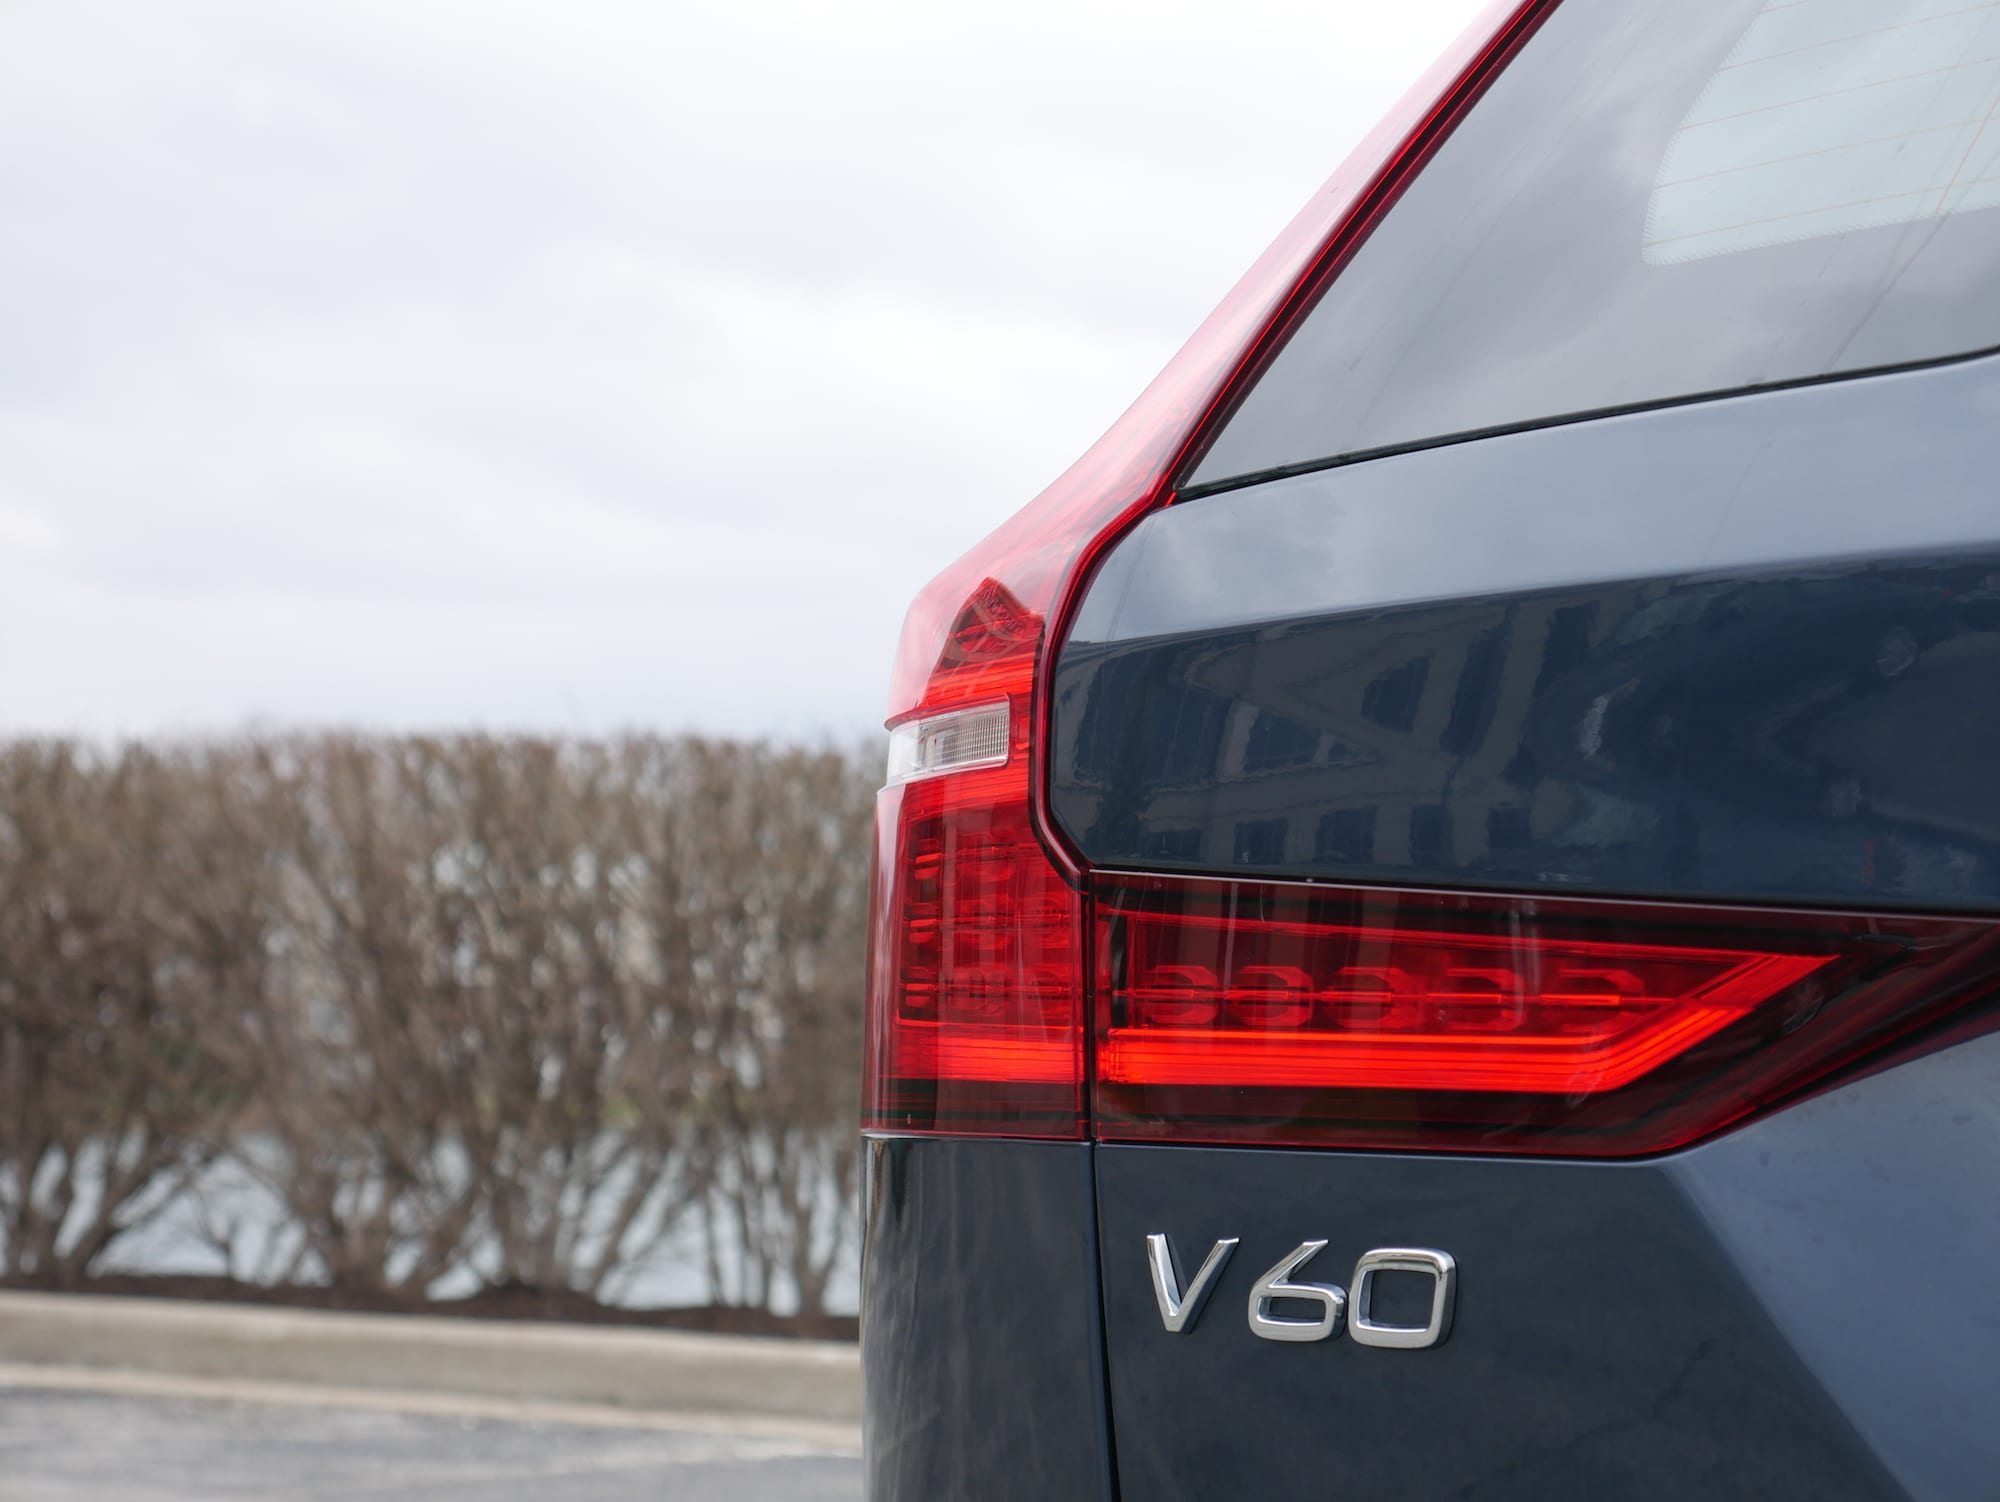 2019 Volvo V60 T6 Inscription badging